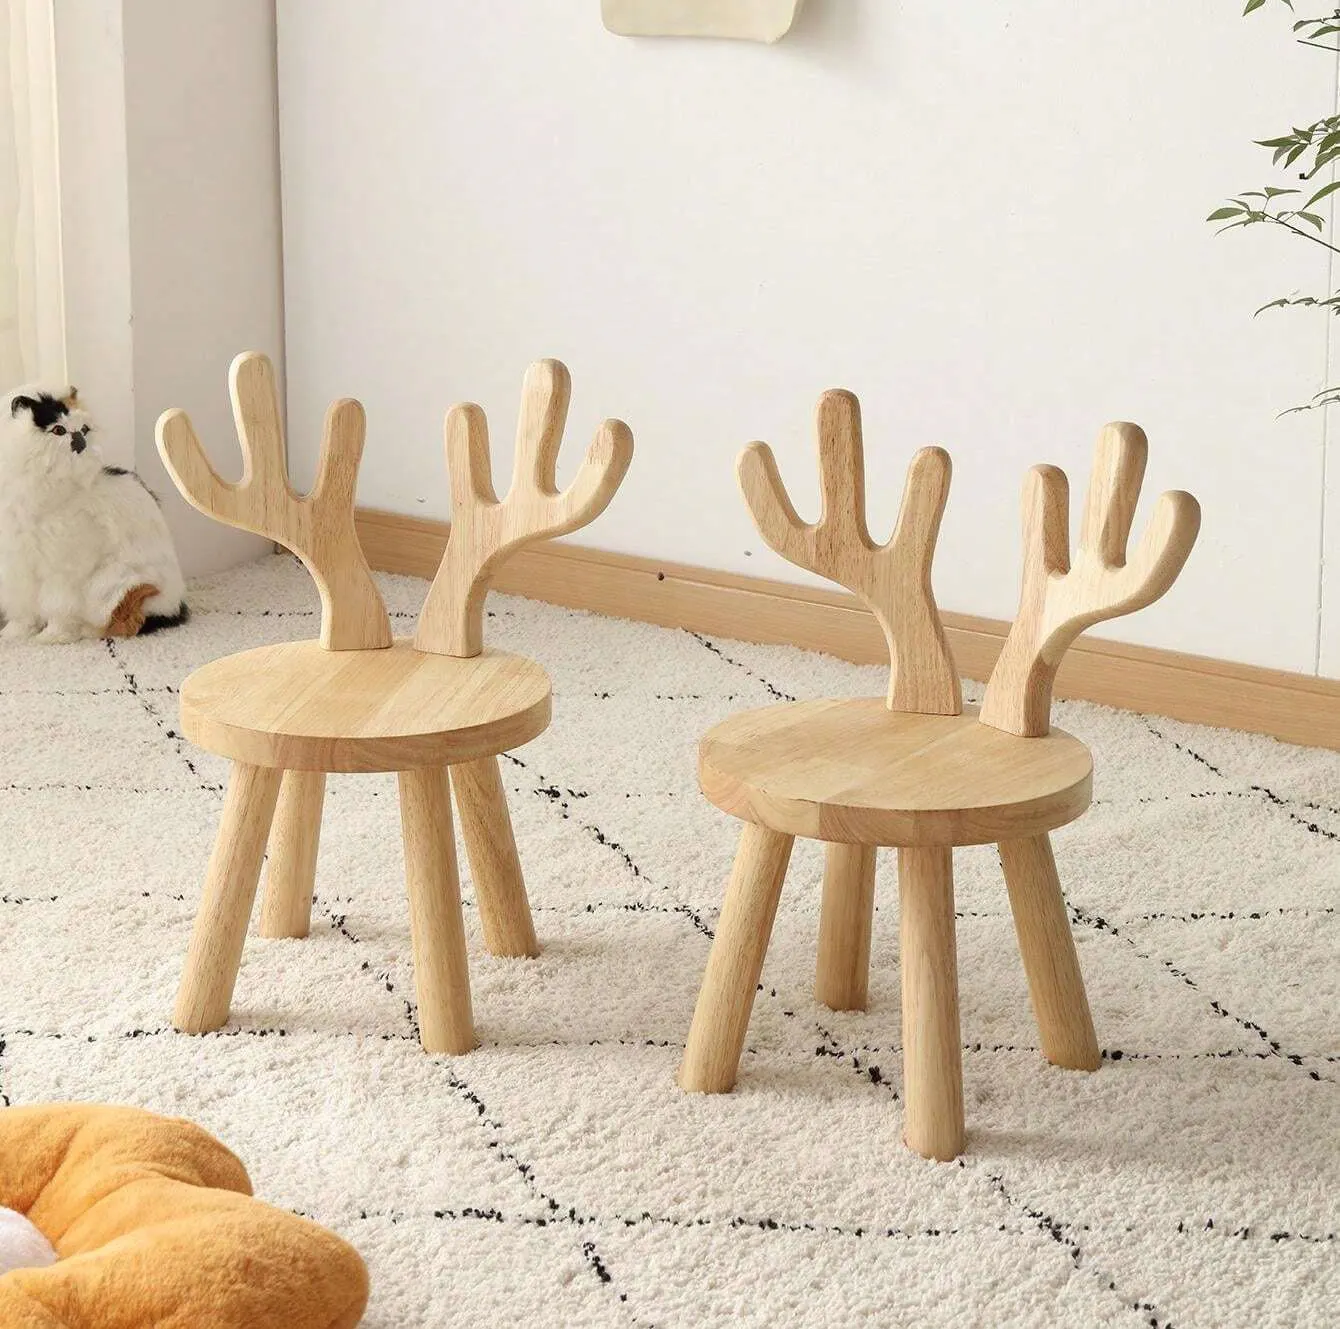 كرسي خارجي خشبي ملون يمكن إزالته على شكل غزال للاطفال حديثي المشي شحن مجاني كرسي تبديل الأحذية من الخشب الطبيعي